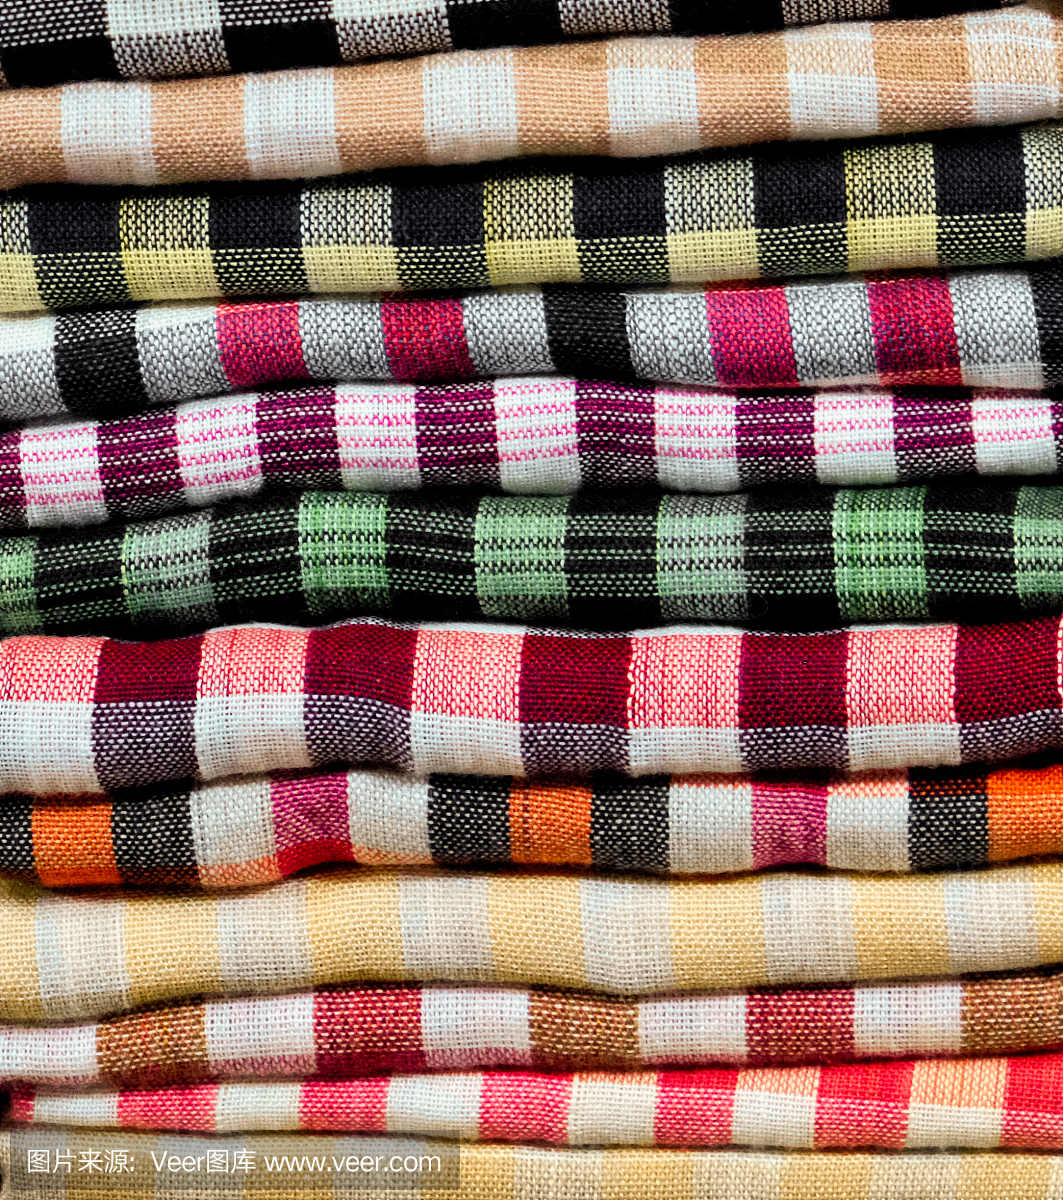 彩色的毛巾,尿布,折叠的纺织品,布作为背景